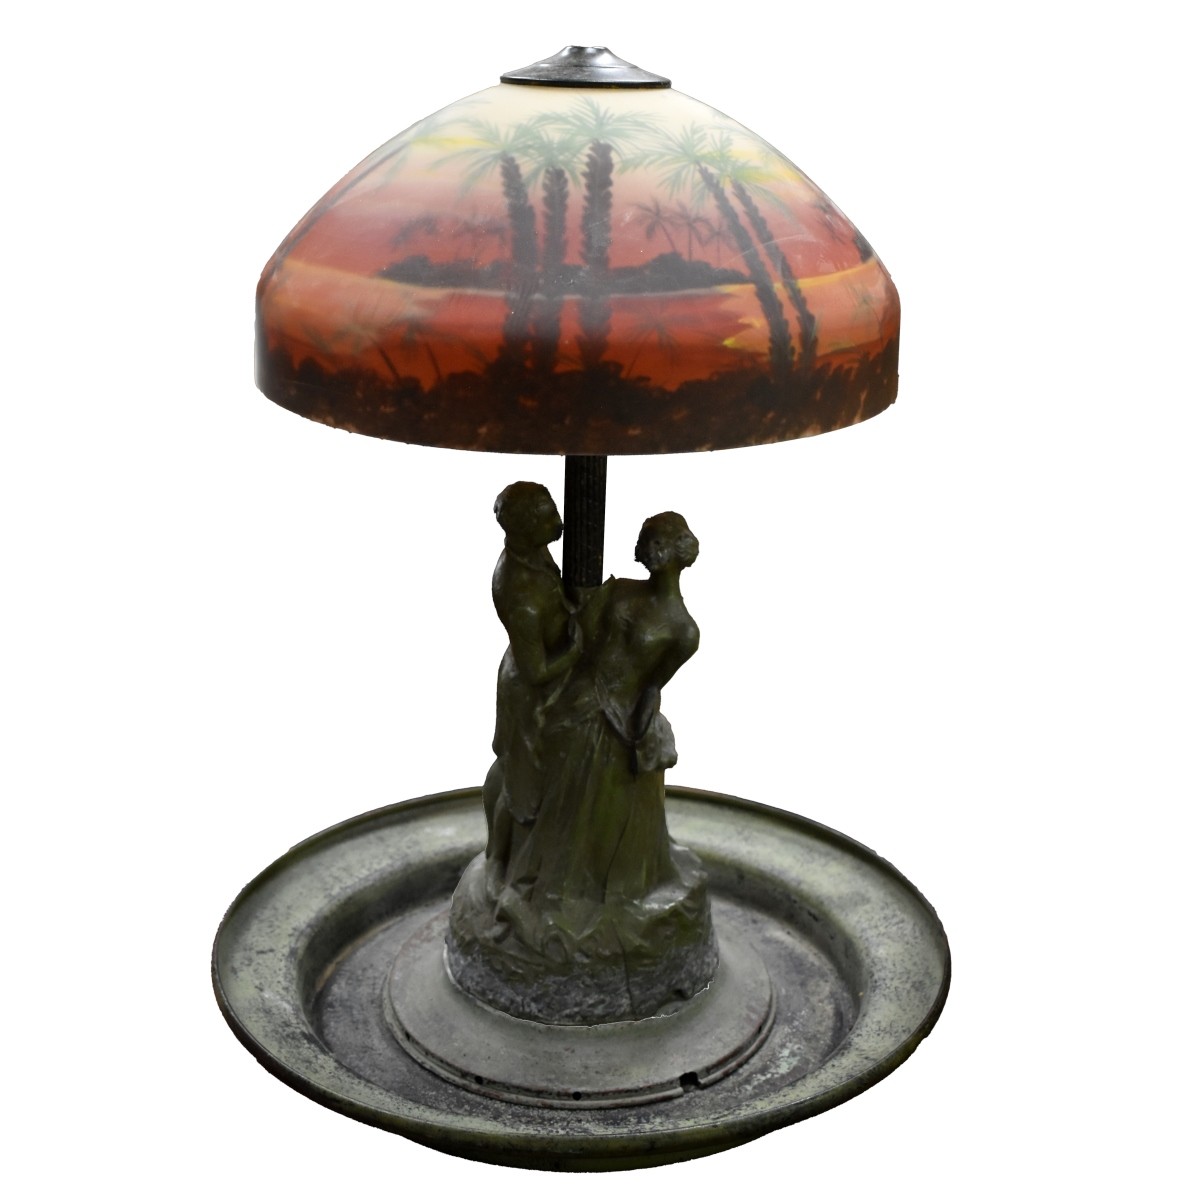 Vintage Art Nouveau Style Fountain as Lamp